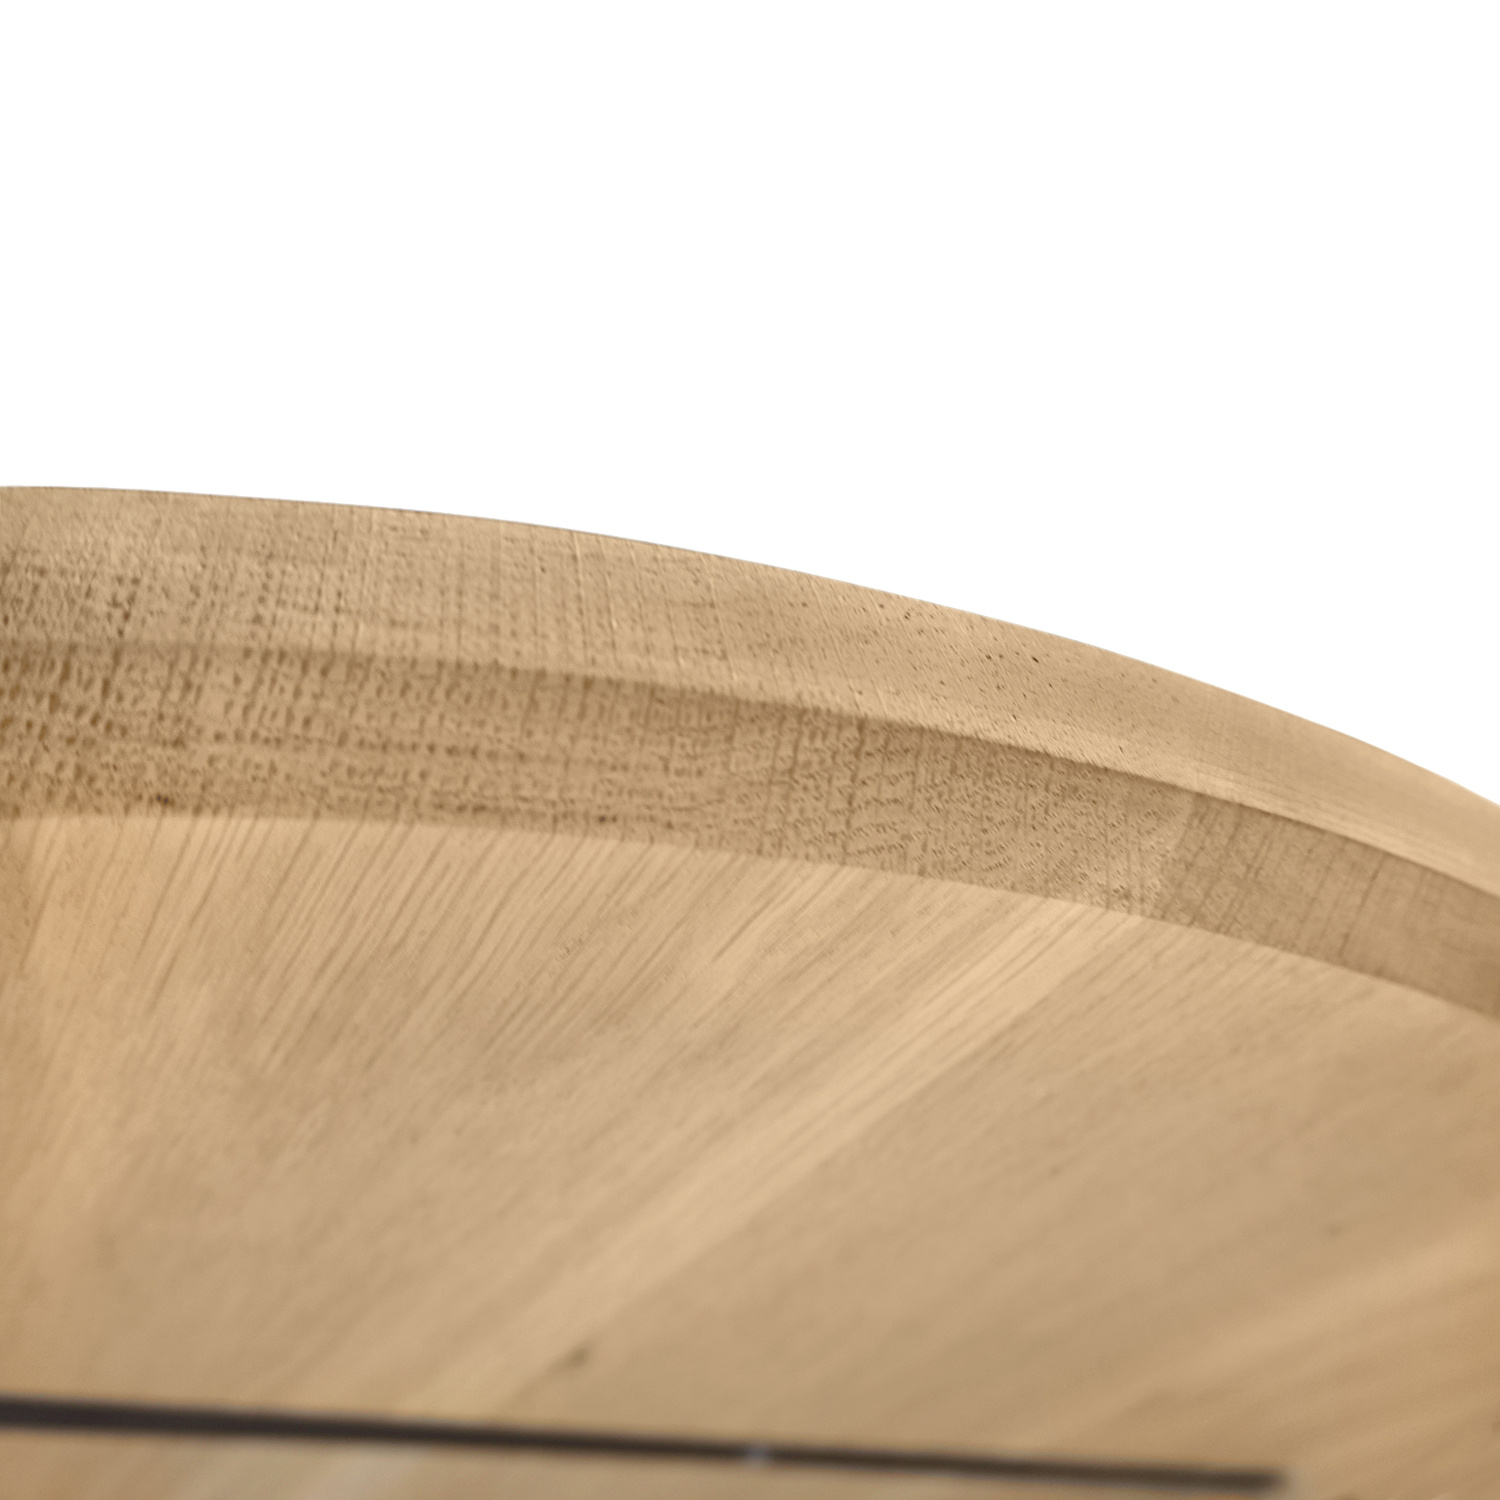  Deens ovaal eiken tafelblad - 2,5 cm dik (1-laag) - Diverse afmetingen - extra rustiek Europees eikenhout - met extra brede lamellen (circa 14-20 cm) - verlijmd kd 8-12%